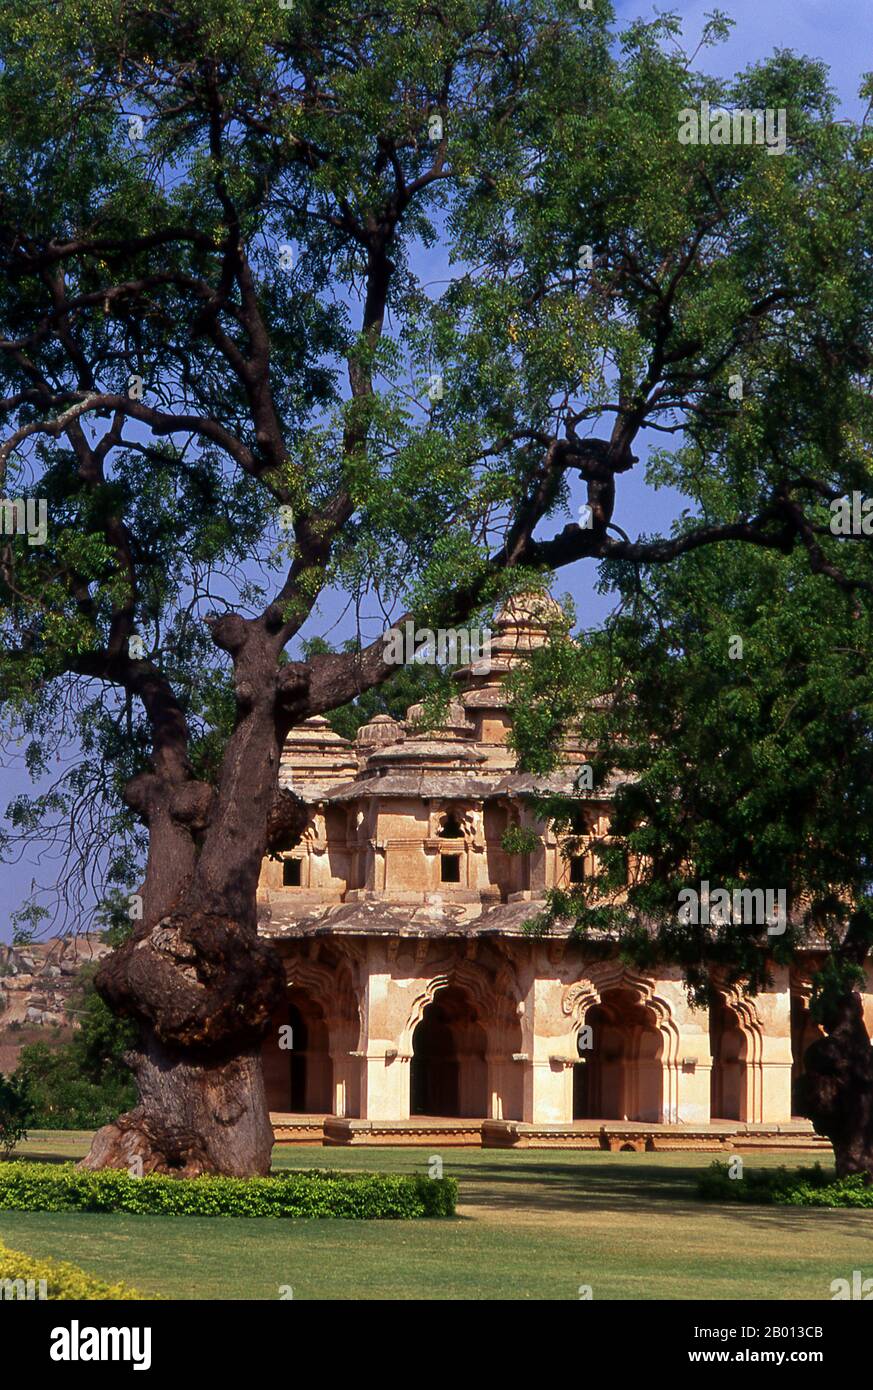 Indien: Lotus Mahal, Zenana Enclosure, Hampi, Bundesstaat Karnataka. Der Lotus Mahal ist eine Konstruktion aus der späteren Vijayanagara-Zeit und zeigt islamischen Einfluss in seinen gewölbten Toren und gewölbten Decken. Das Zenana-Gehäuse ist ein ummauertes Gelände, in dem ursprünglich die Frauen des königlichen Haushalts untergebracht waren. Hampi ist ein Dorf im nördlichen Bundesstaat Karnataka. Es befindet sich in den Ruinen von Vijayanagara, der ehemaligen Hauptstadt des Vijayanagara-Reiches. Vor der Stadt Vijayanagara ist es weiterhin ein wichtiges religiöses Zentrum, in dem der Virupaksha-Tempel sowie mehrere andere Denkmäler untergebracht sind. Stockfoto